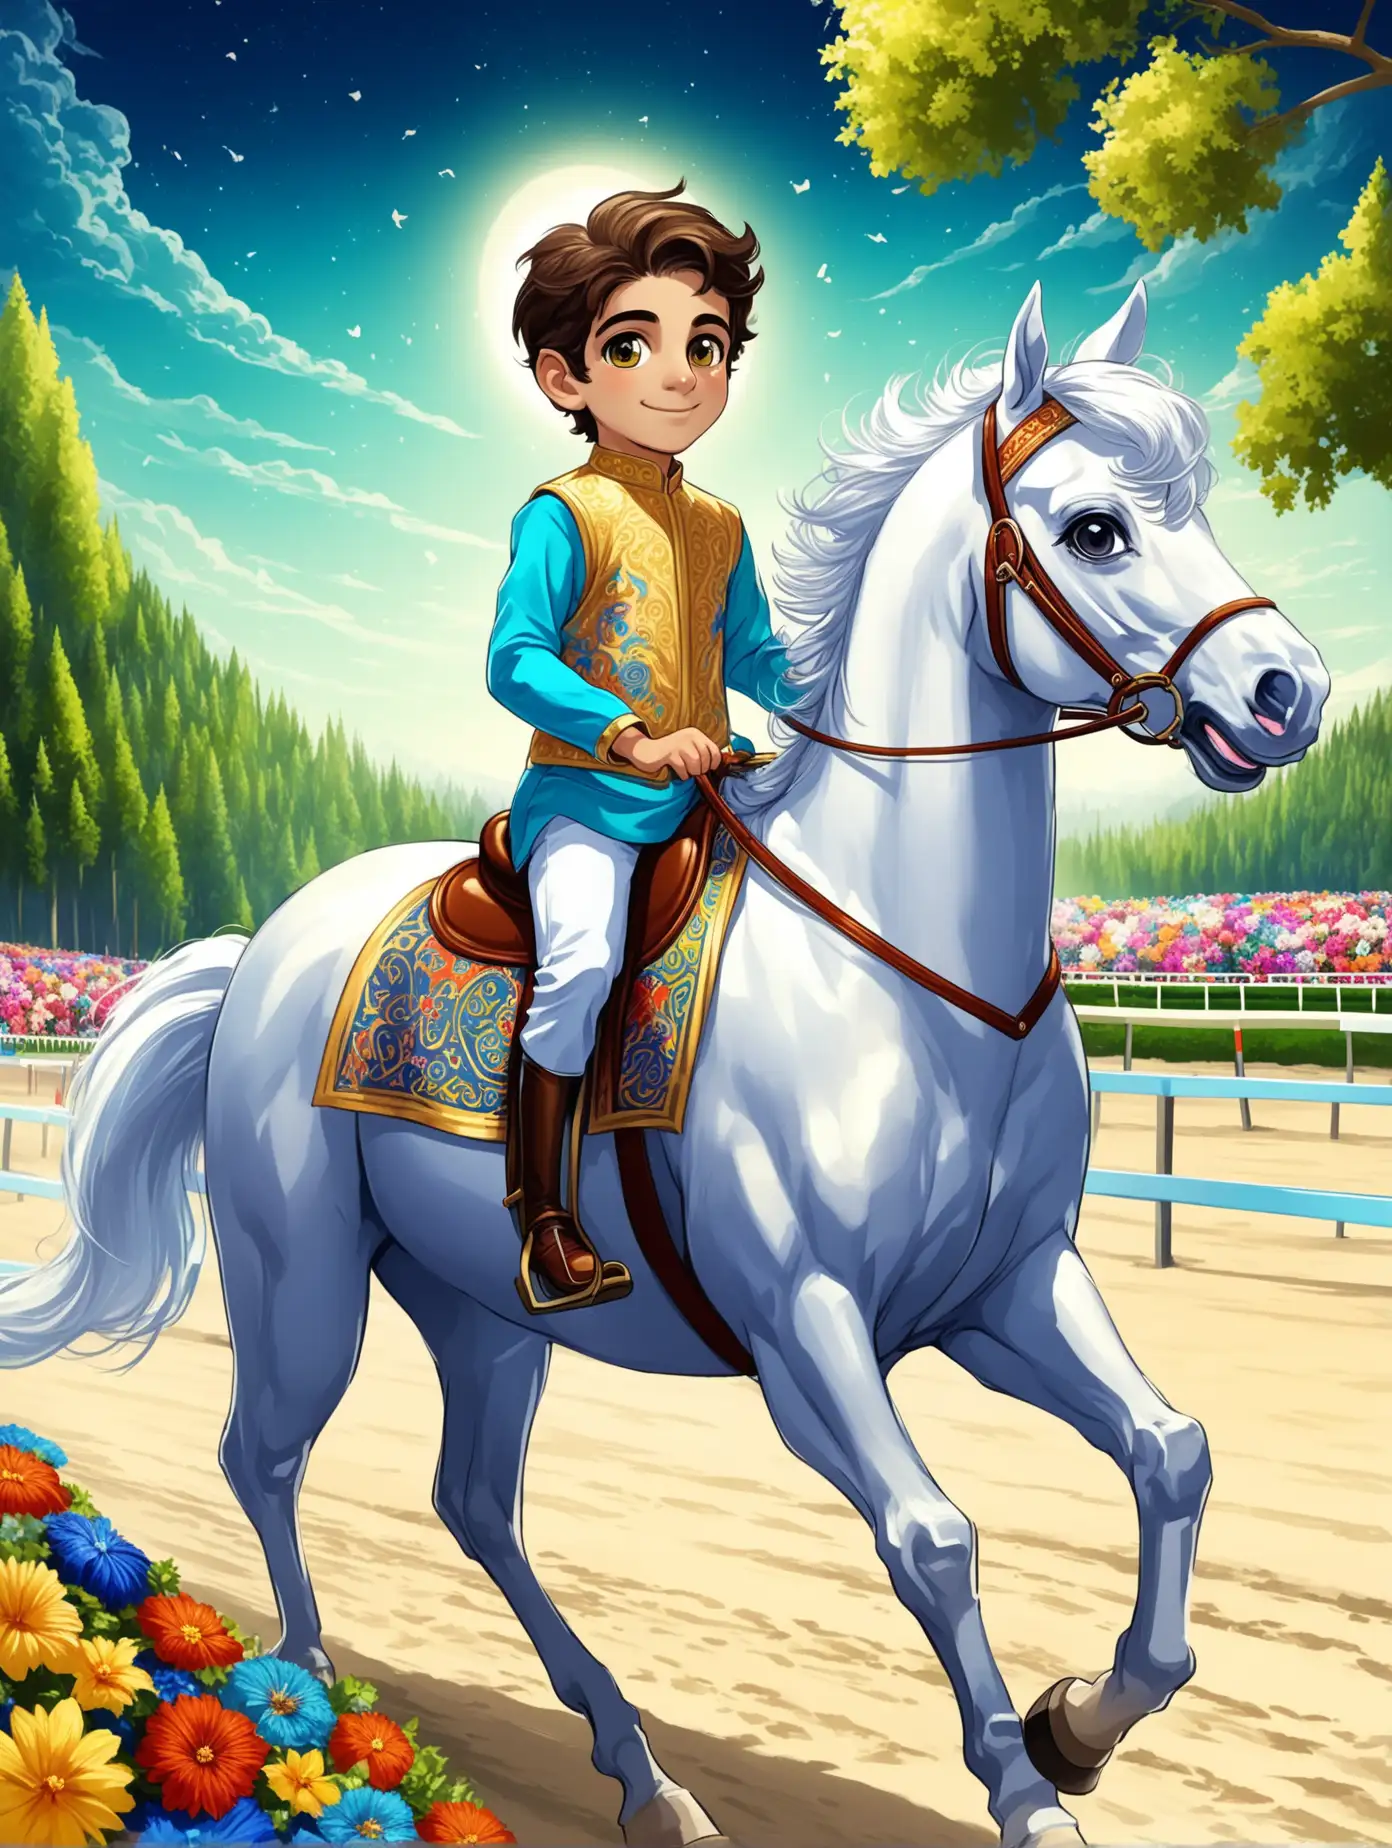 Persian Boy Riding Horse at HighTech Beach Racing Field